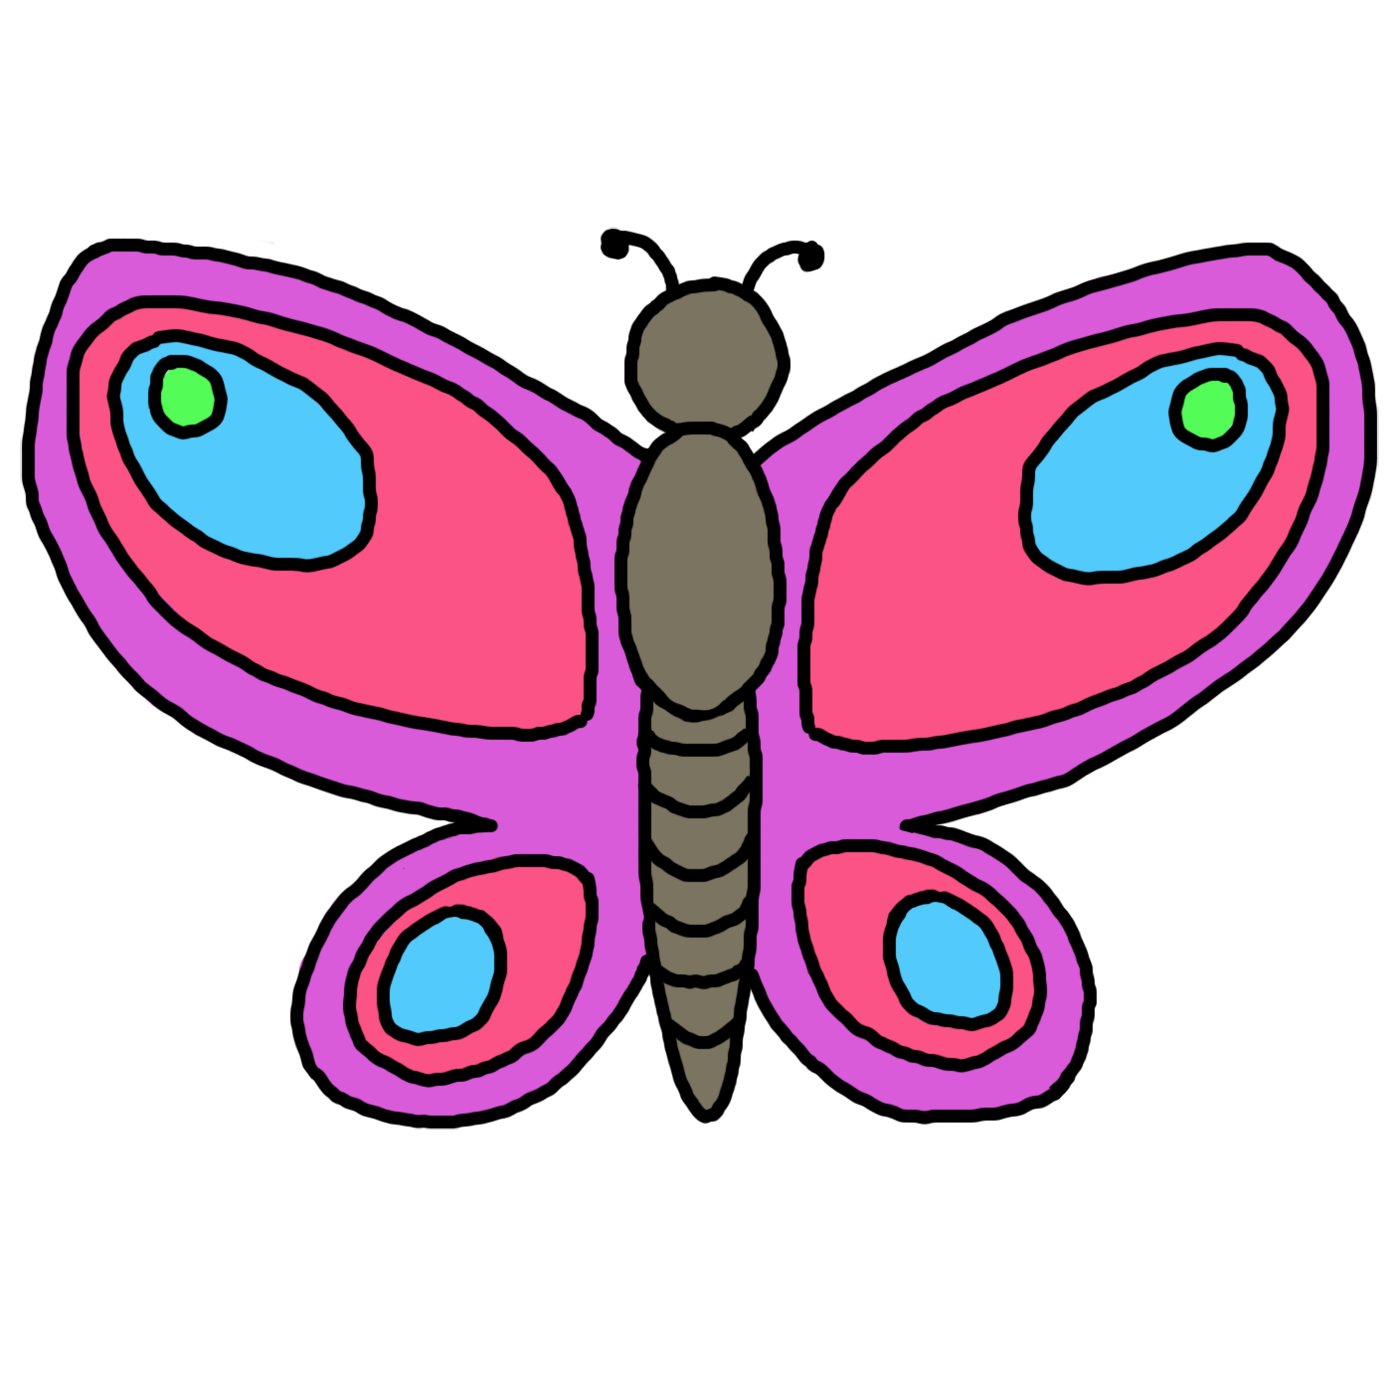 Butterflies clip art clipart